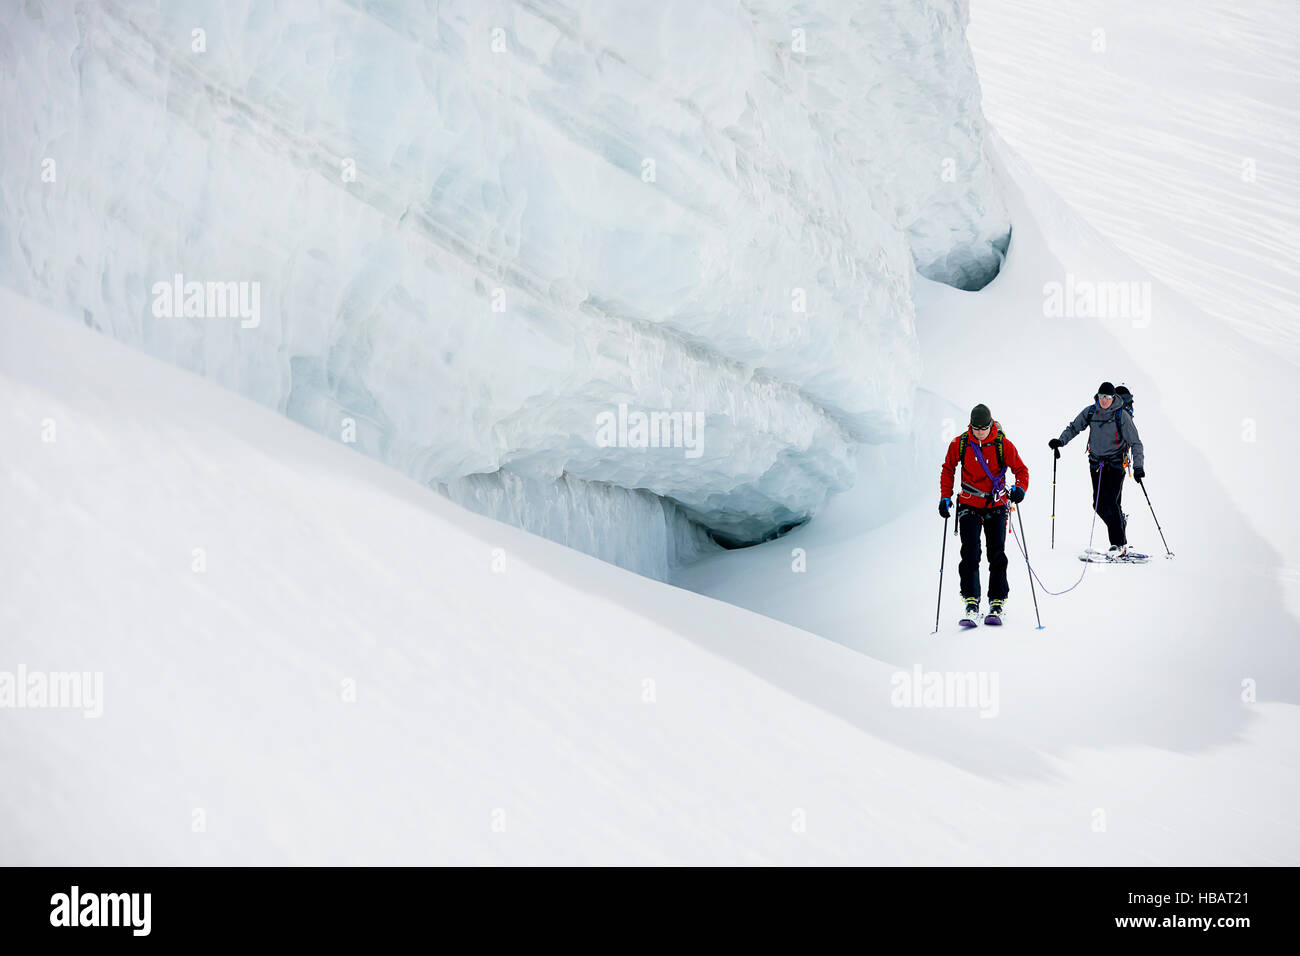 Les alpinistes ski de randonnée sur la montagne couverte de neige, Saas Fee, Suisse Banque D'Images